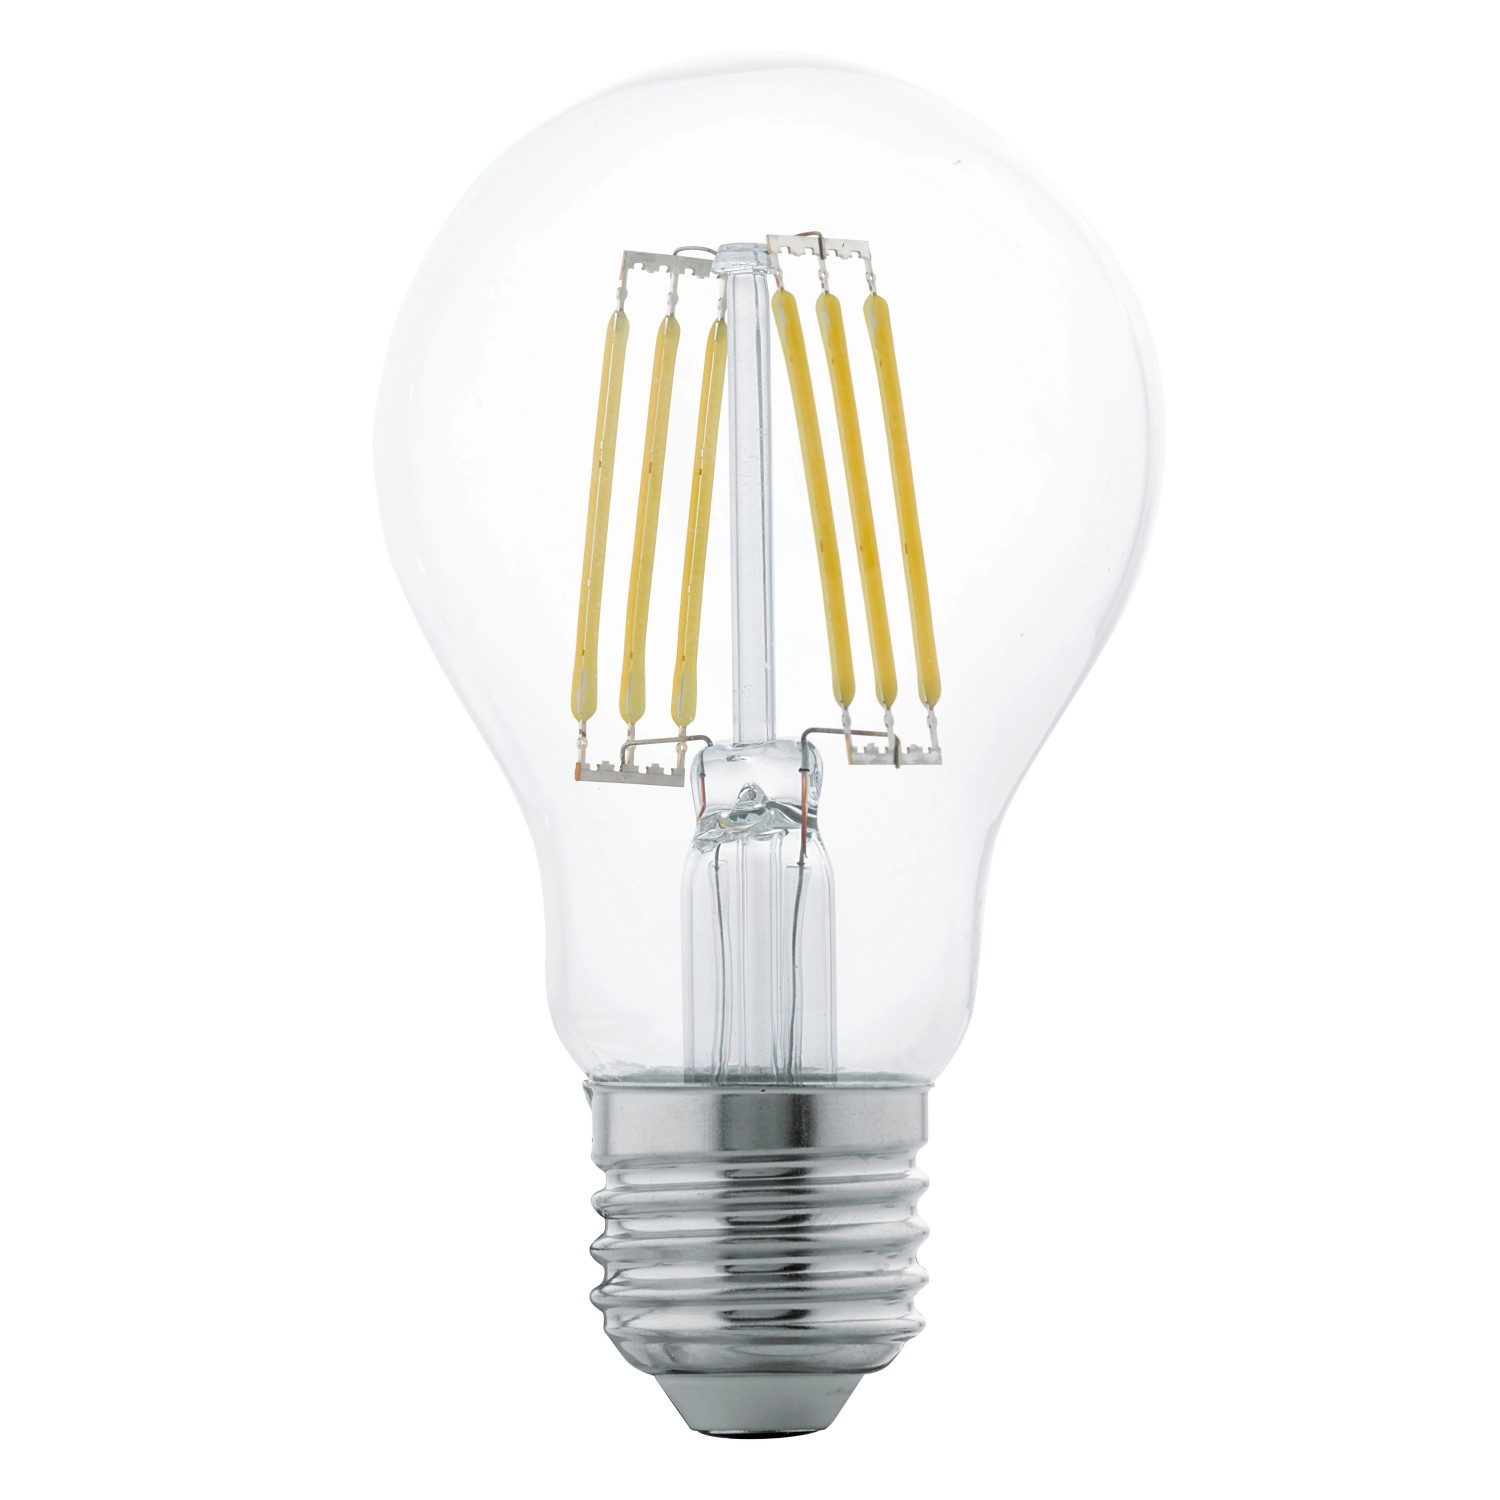 Bellalux Lampe spéciale LED T26 mat E14 Blanc chaud 20 W / 200 lm